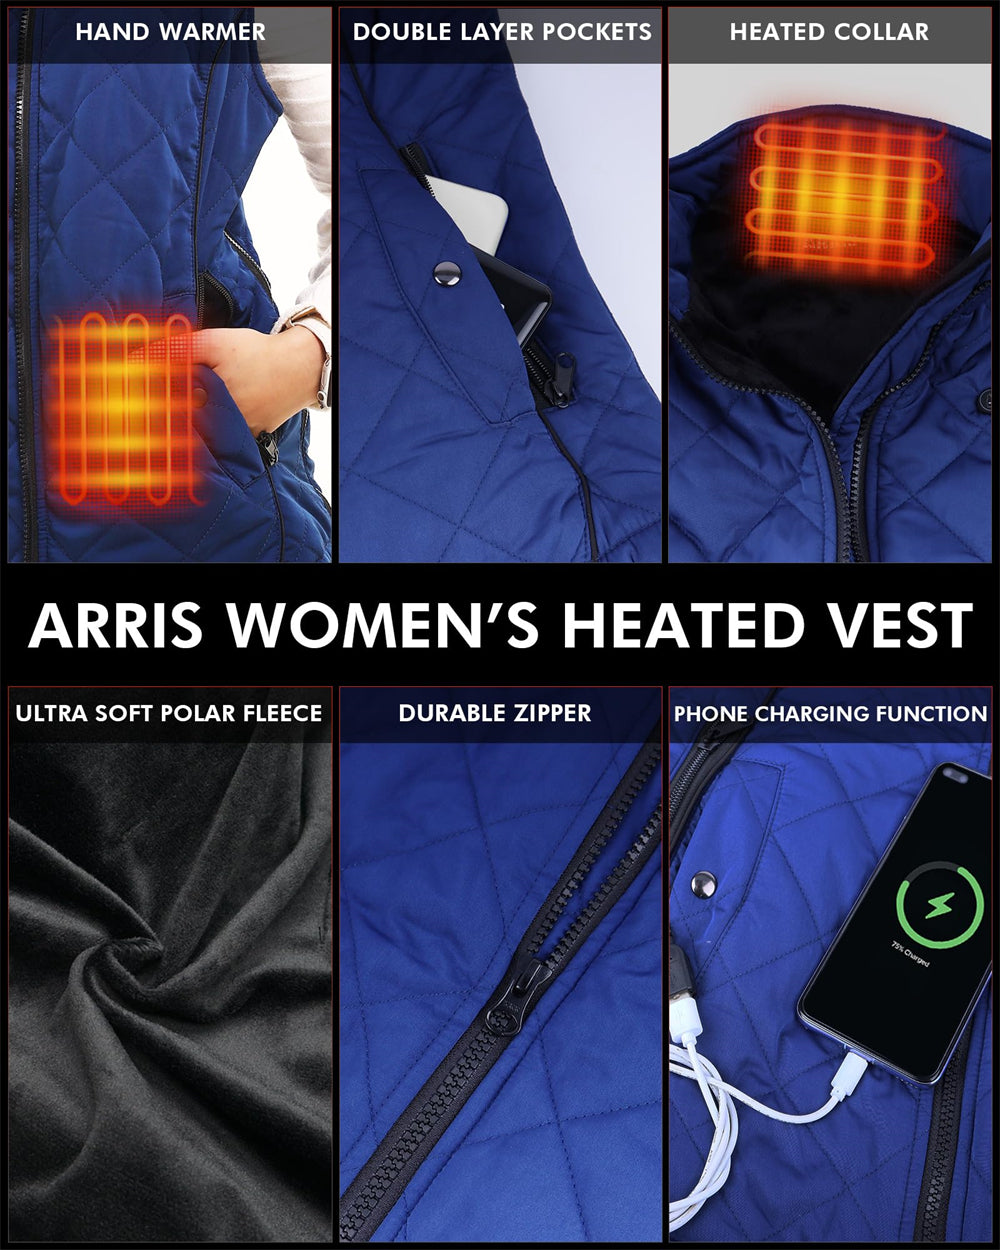 ARRIS Heated Vest for Women, 7.4V Electric Warm Vest 8 Heating Panels Size Adjustable Vest